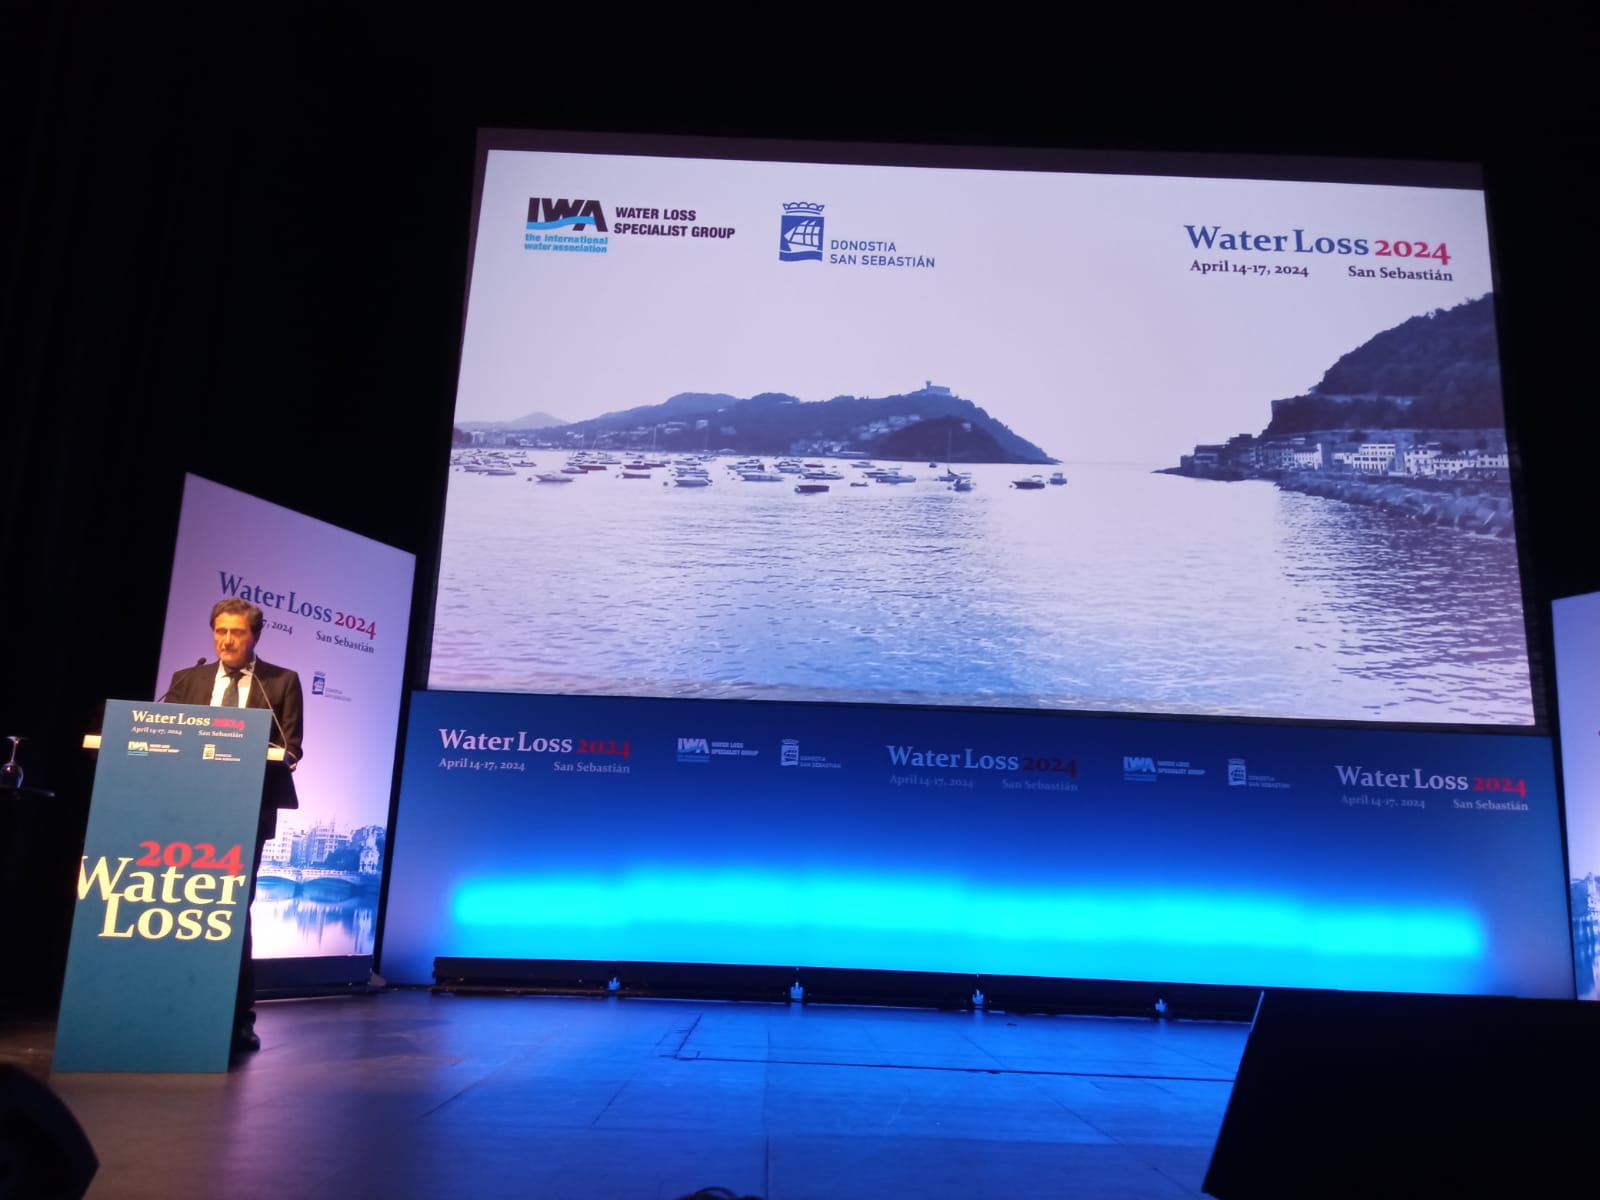 Comienza la Conferencia IWA Water Loss 2024 que reúne en San Sebastián a más de 600 expertos mundiales en pérdidas de agua